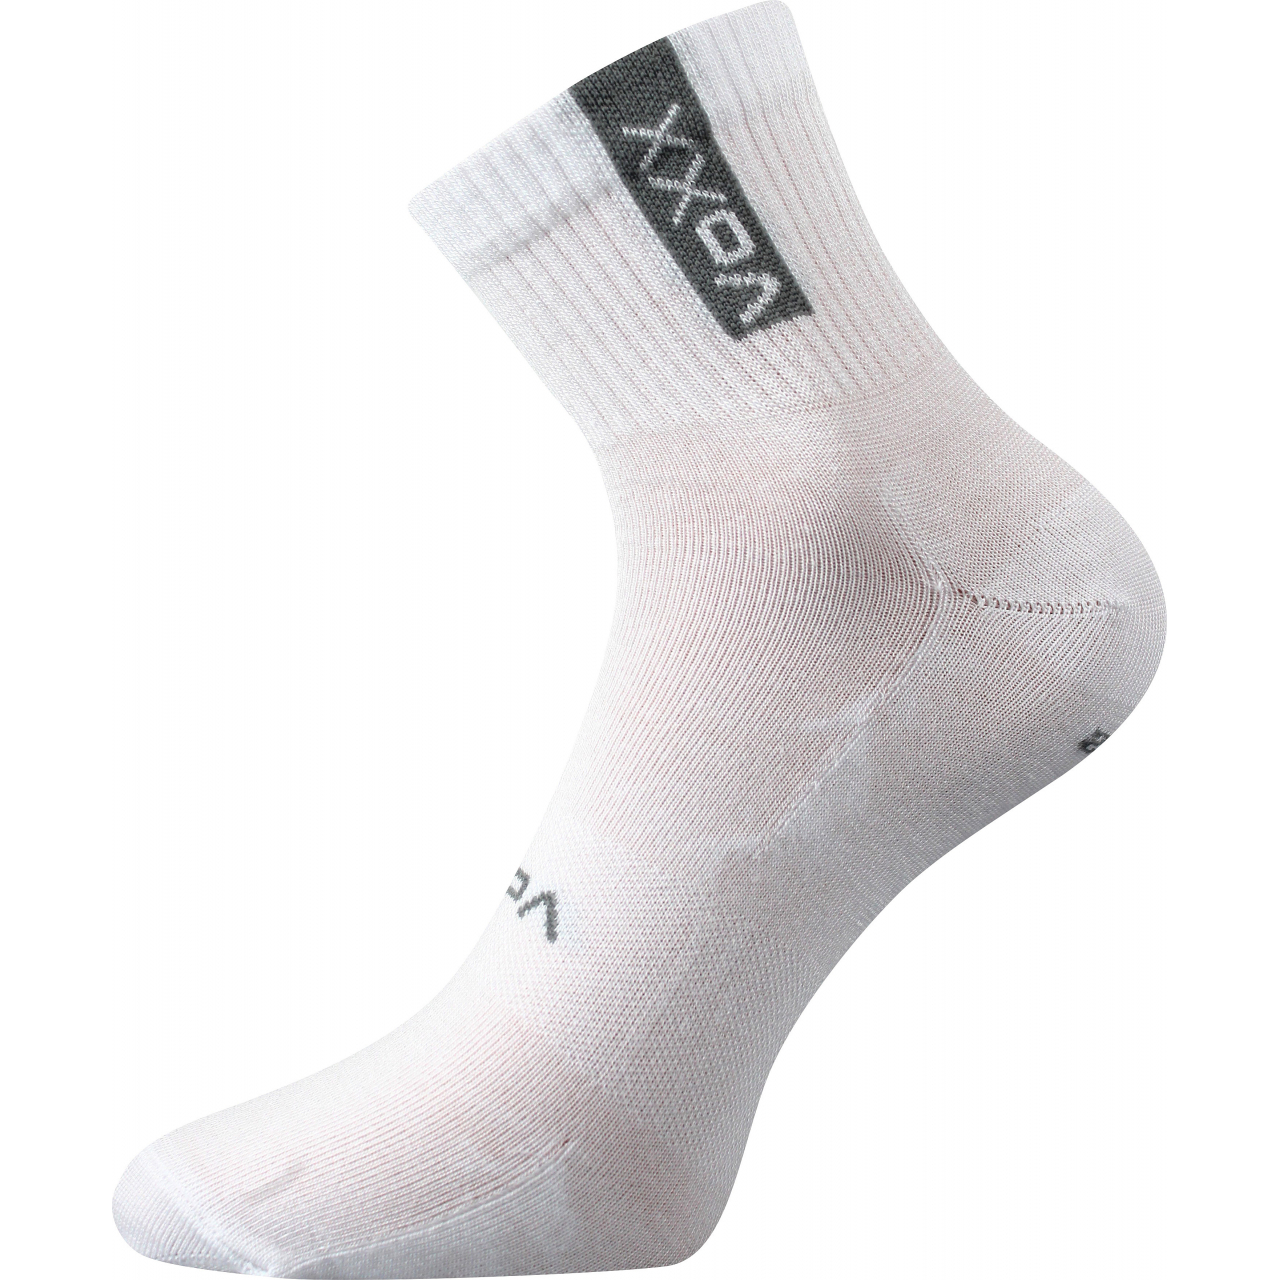 Ponožky sportovní unisex Voxx Brox - bílé, 35-38